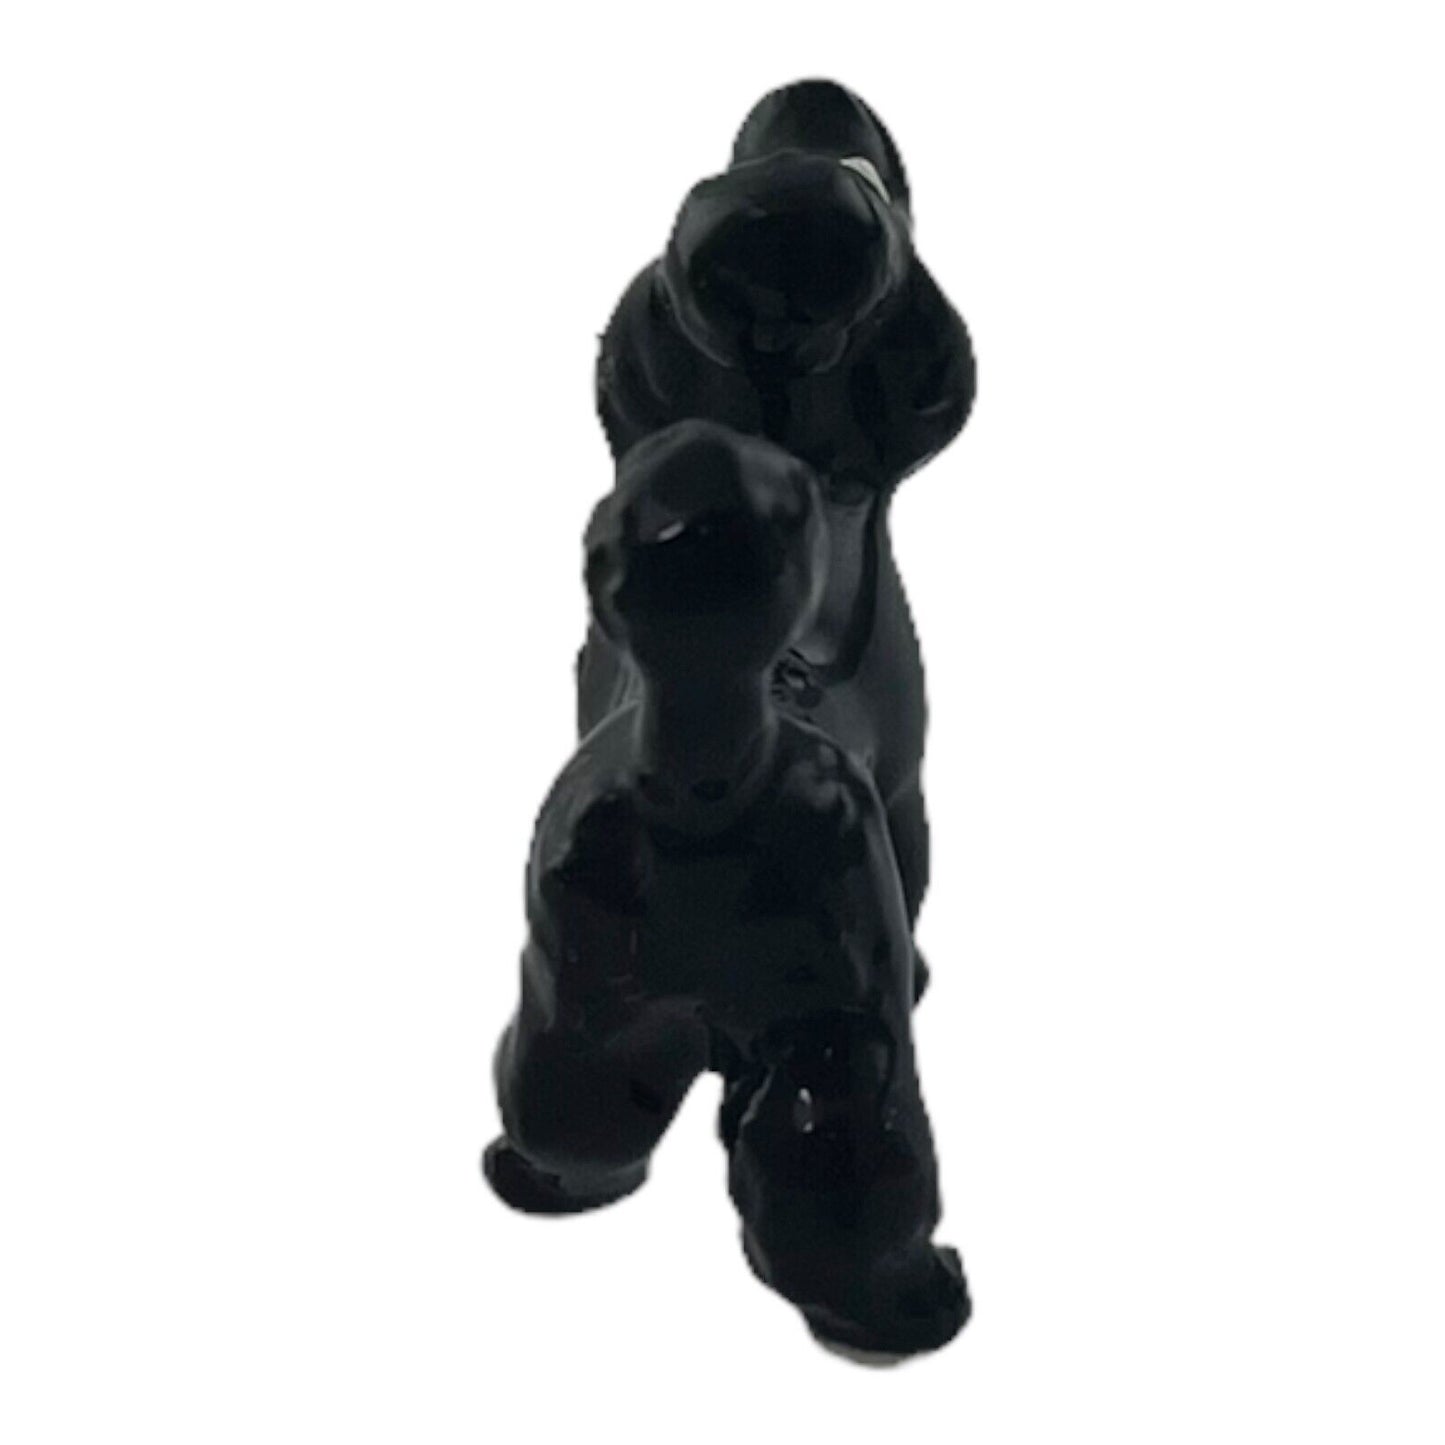 Black Poodle 1 Inch Decorative Vintage Porcelain Figurine